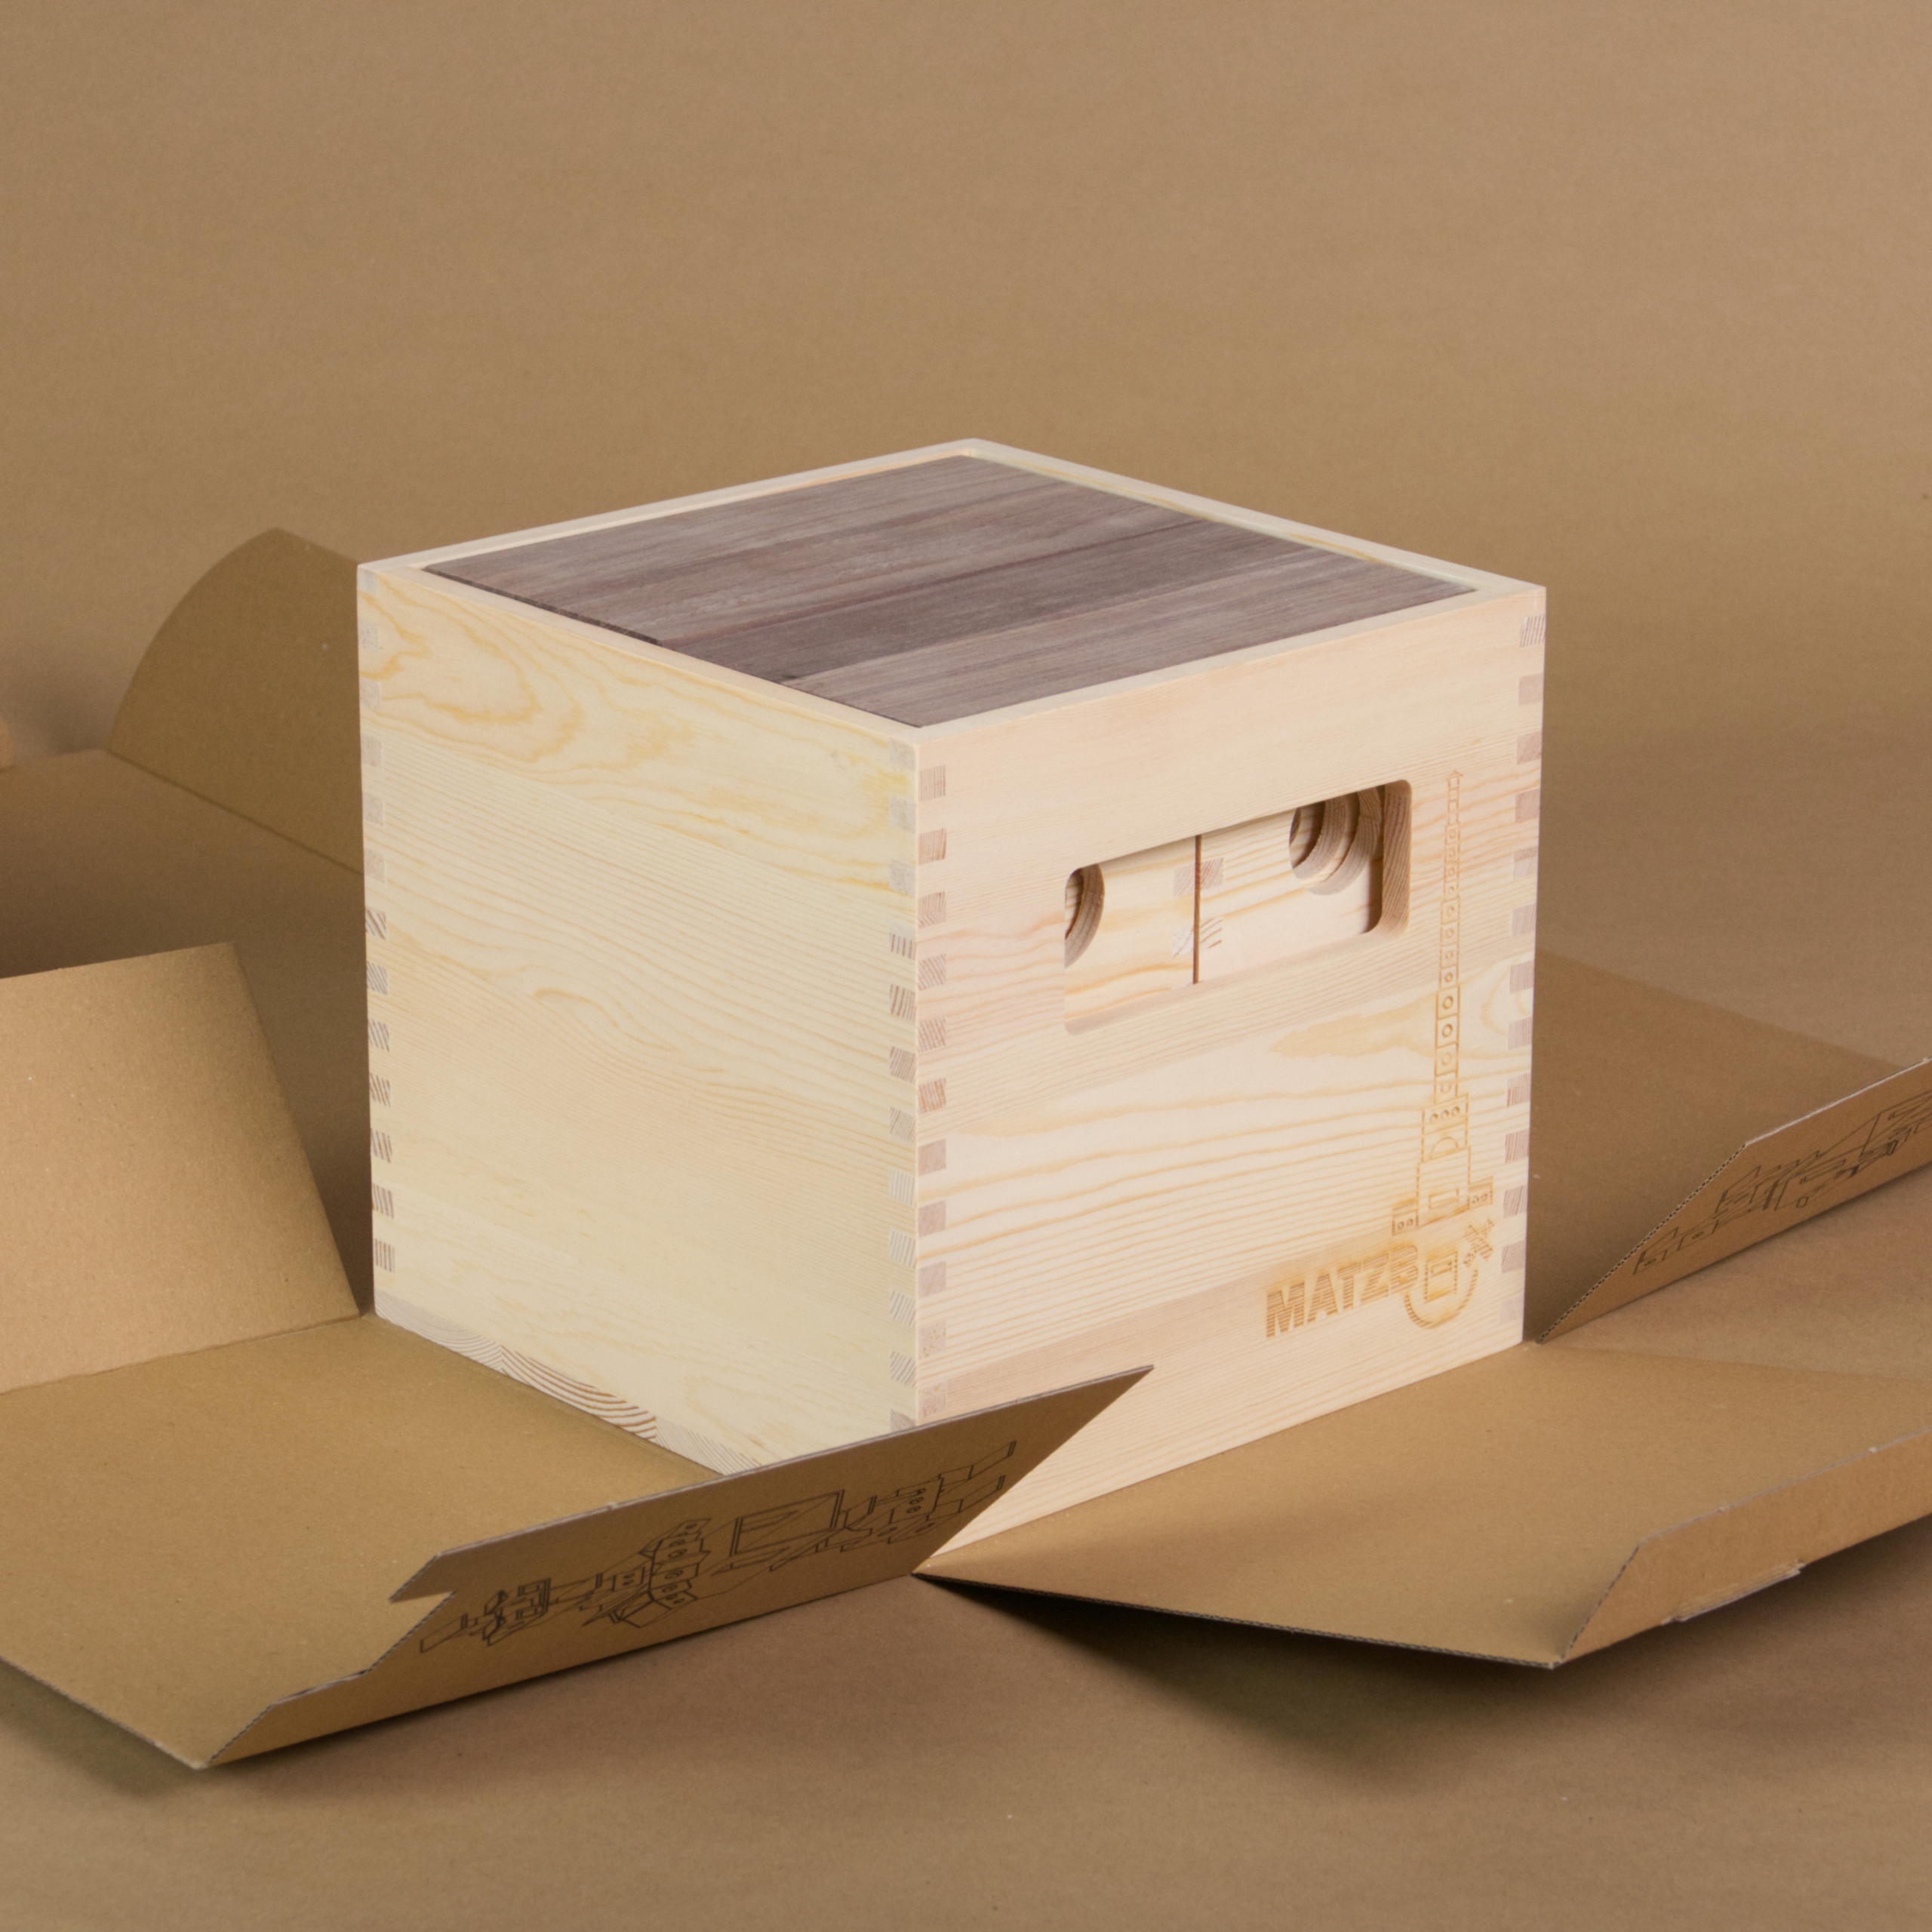 Die MATZBOX steht auf der originalen Pappverpackung, welche bereits aufgefaltet ist. Die Elemente der Matzbox sind alle in die offene Holzkiste aus hellem Holz eingesortiert.